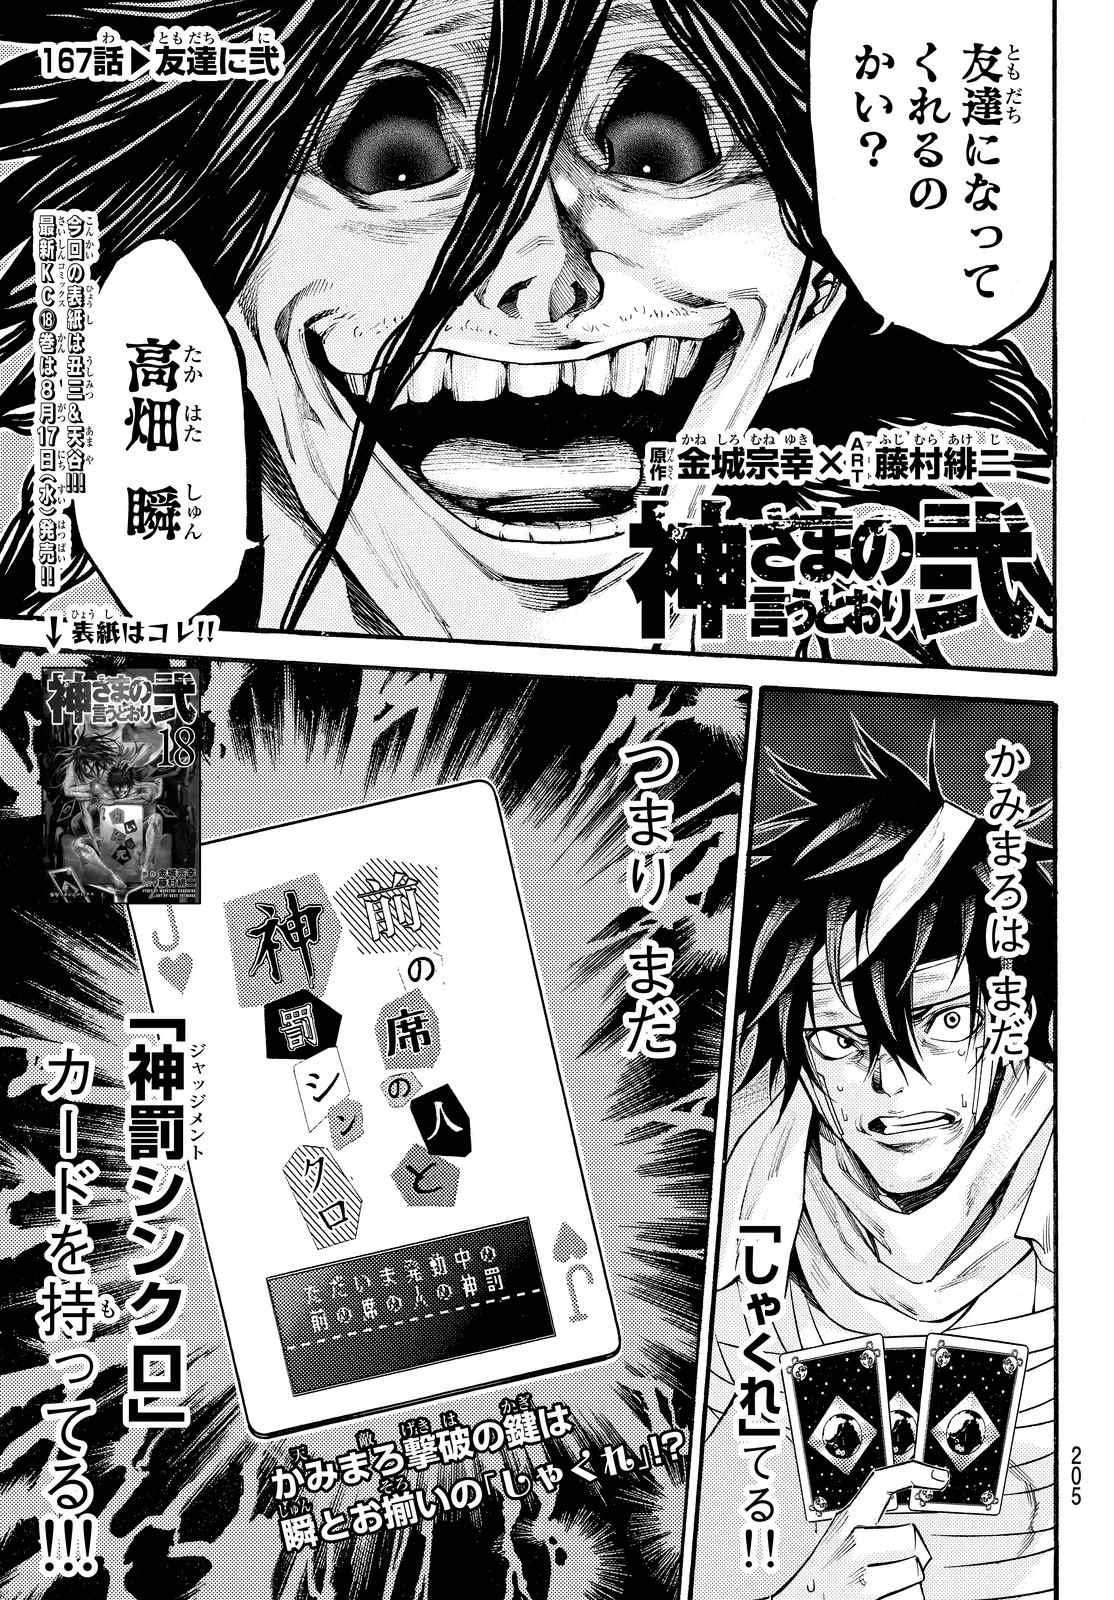 Kamisama no Ituori - Chapter 167 - Page 1